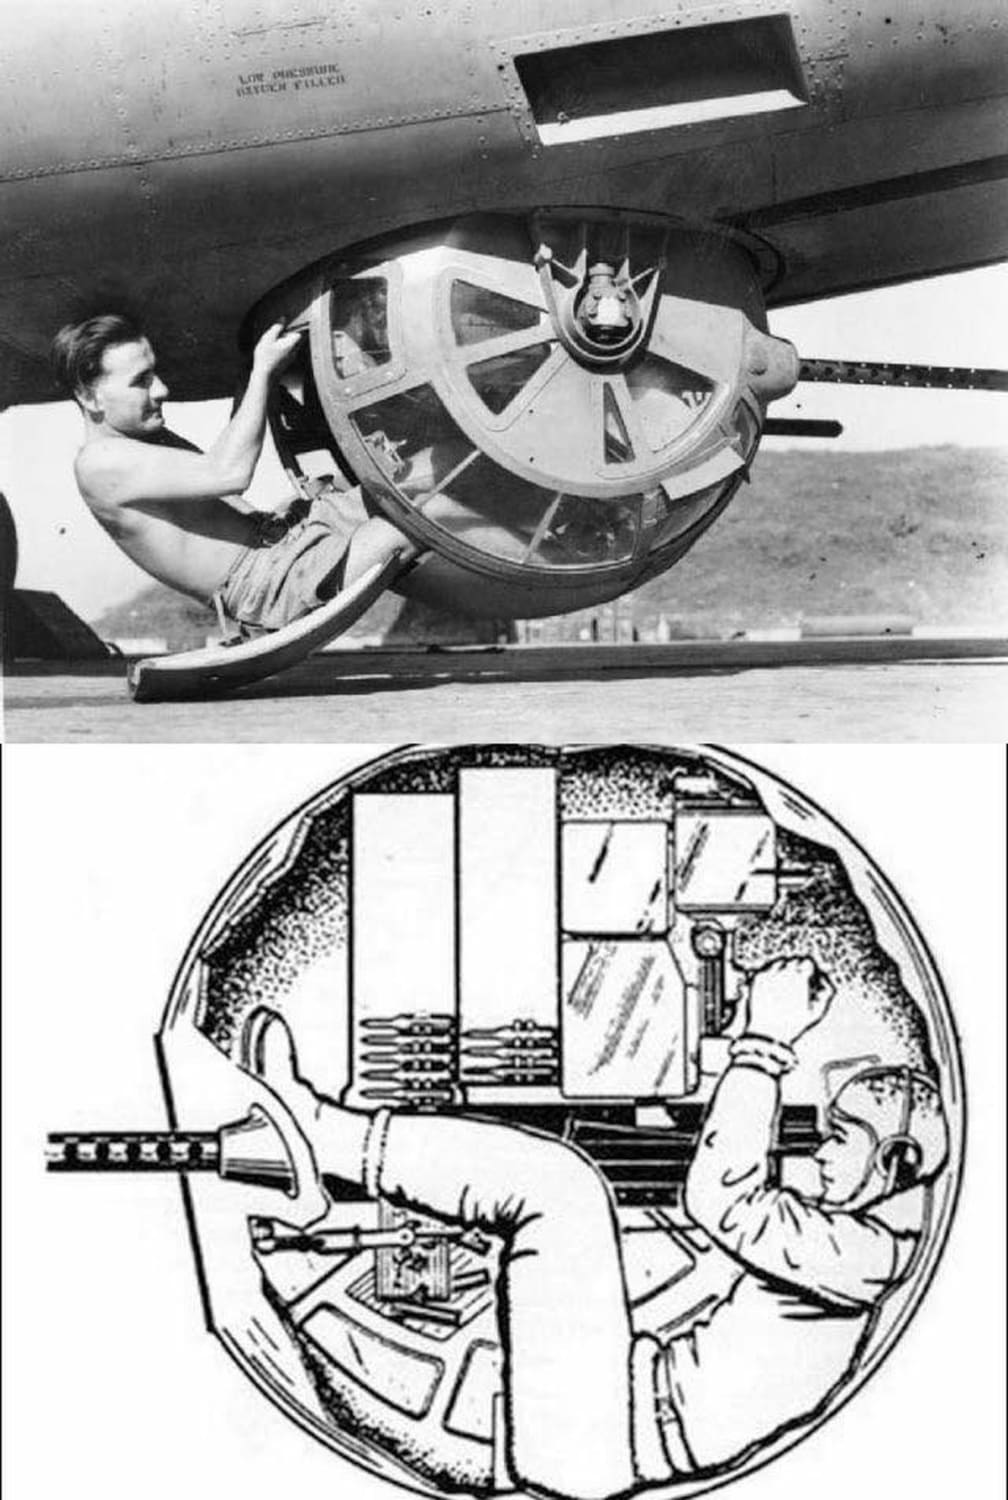 B-17 ball turret gunner.